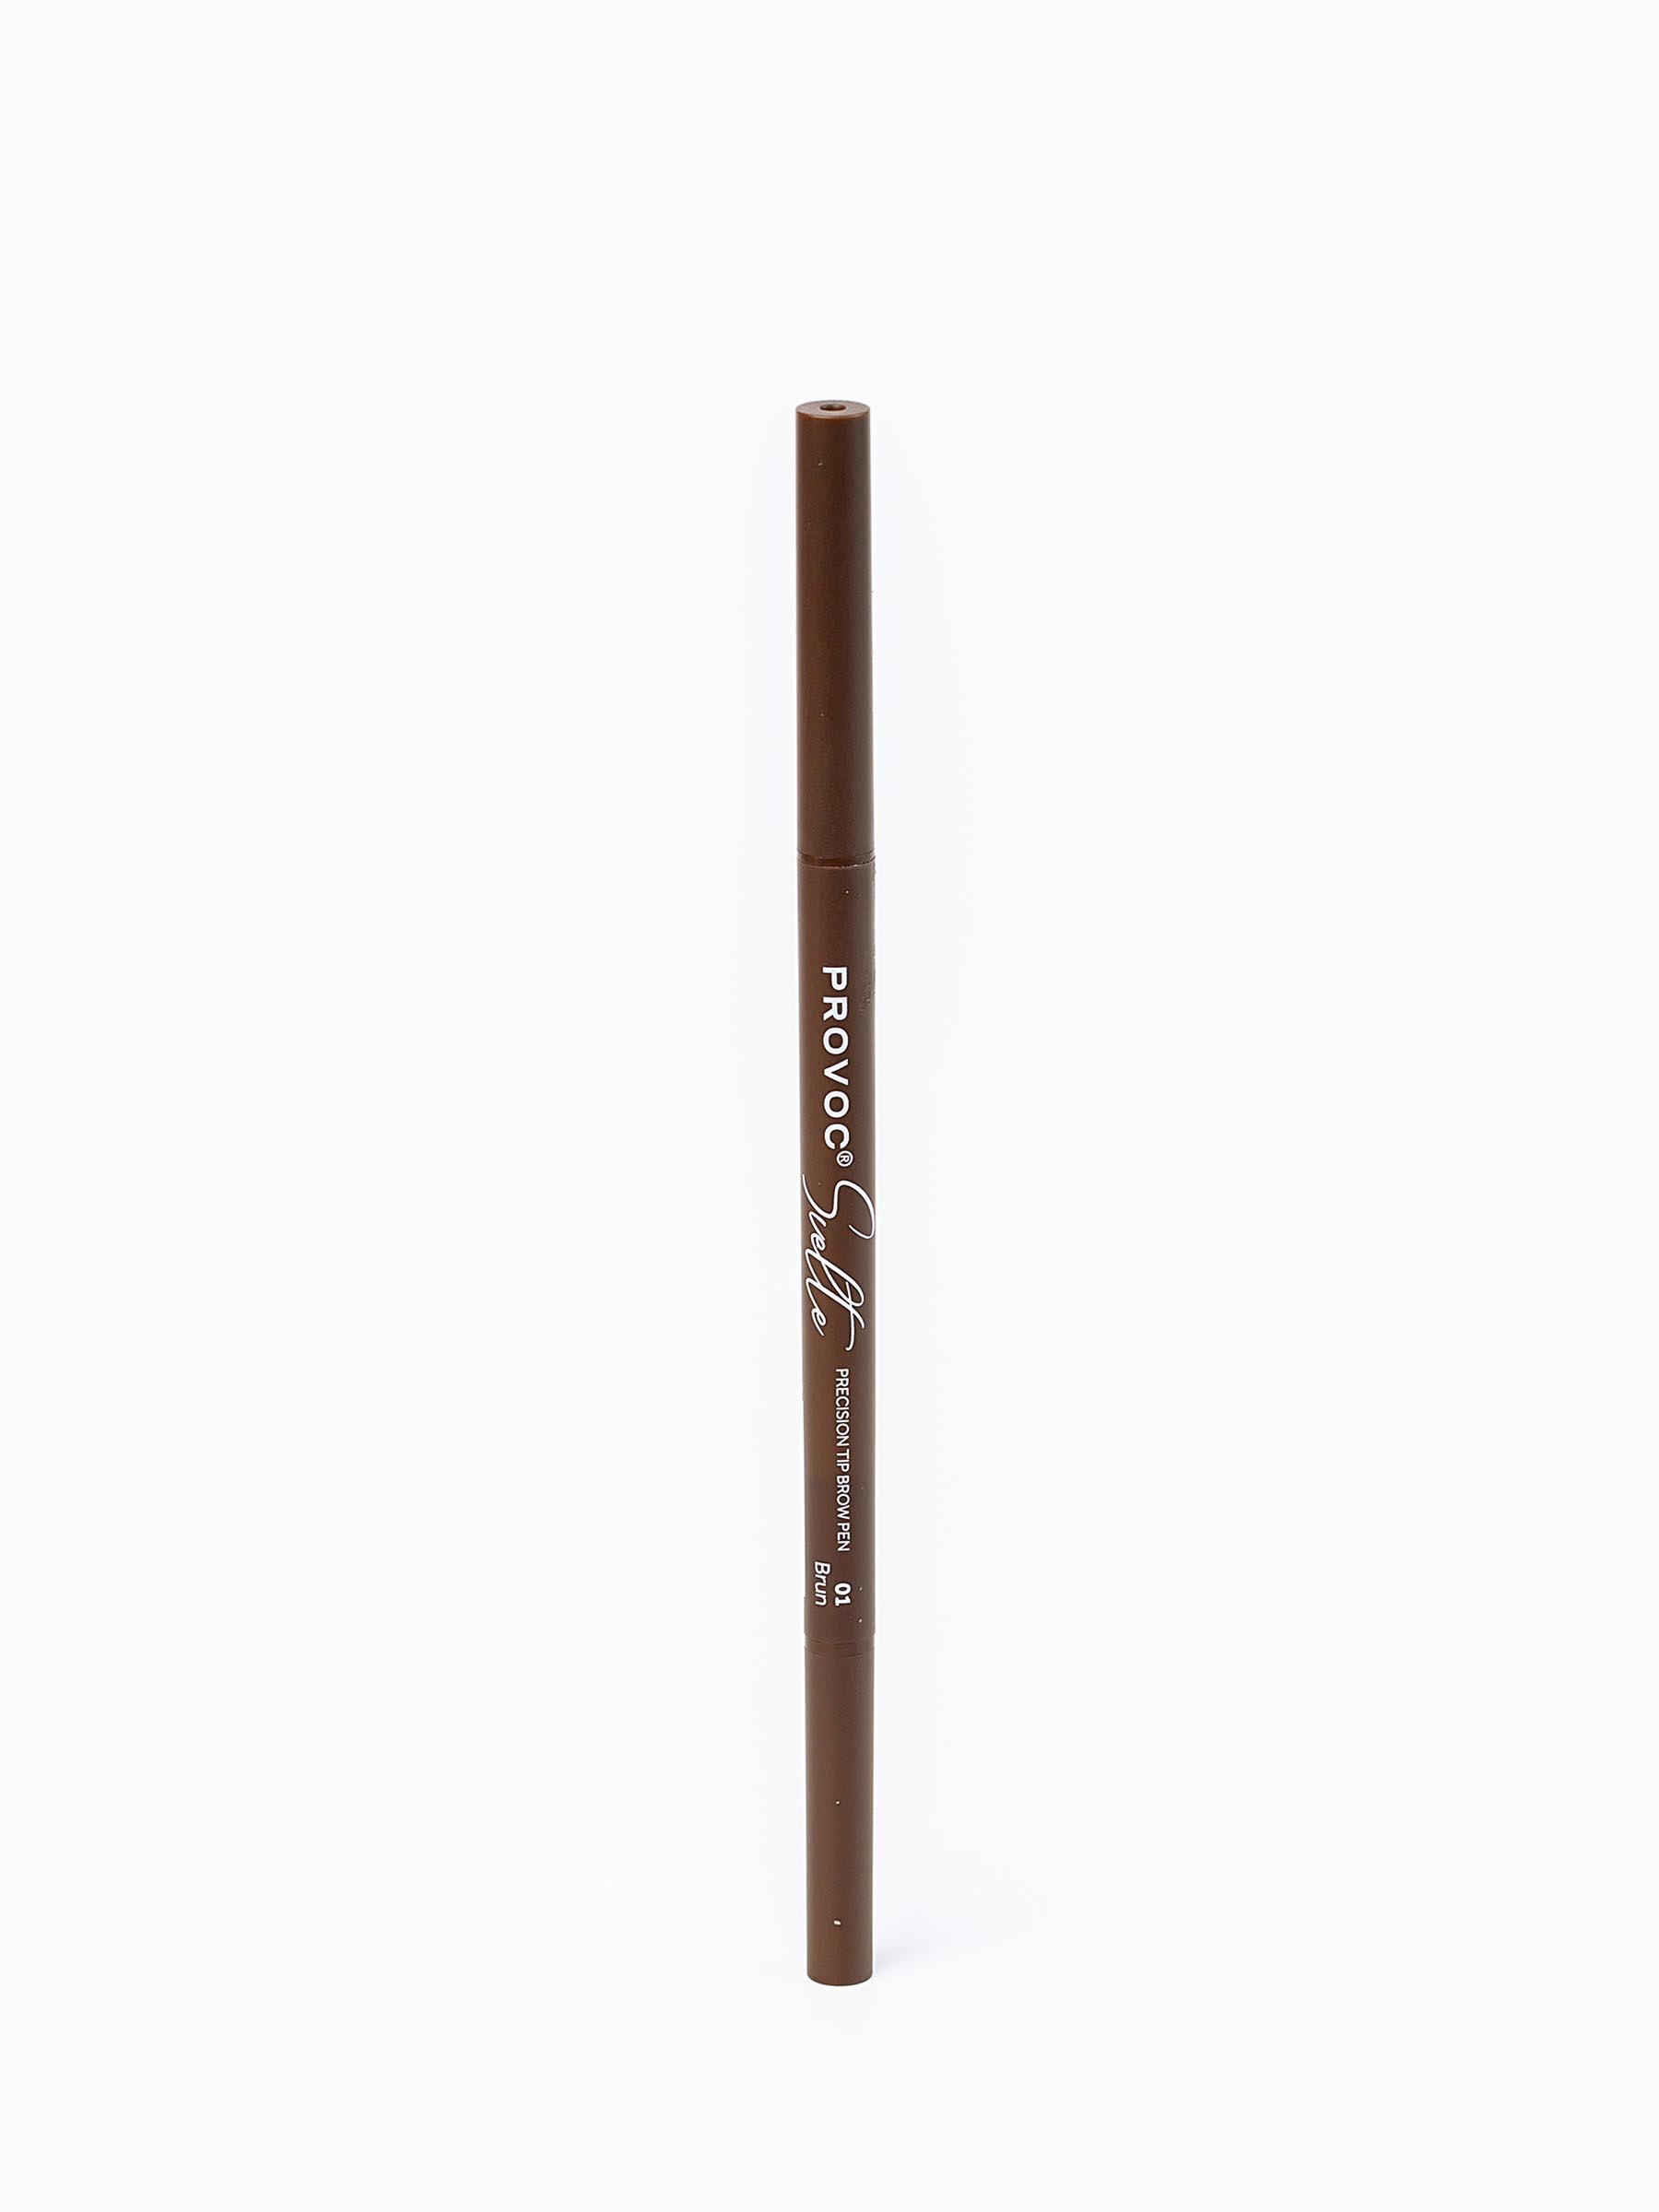 Ультратонкий карандаш для бровей Sawaya International LLC 01 коричневый pupa карандаш для бровей 003 темно коричневый true eyebrow pencil 1 г